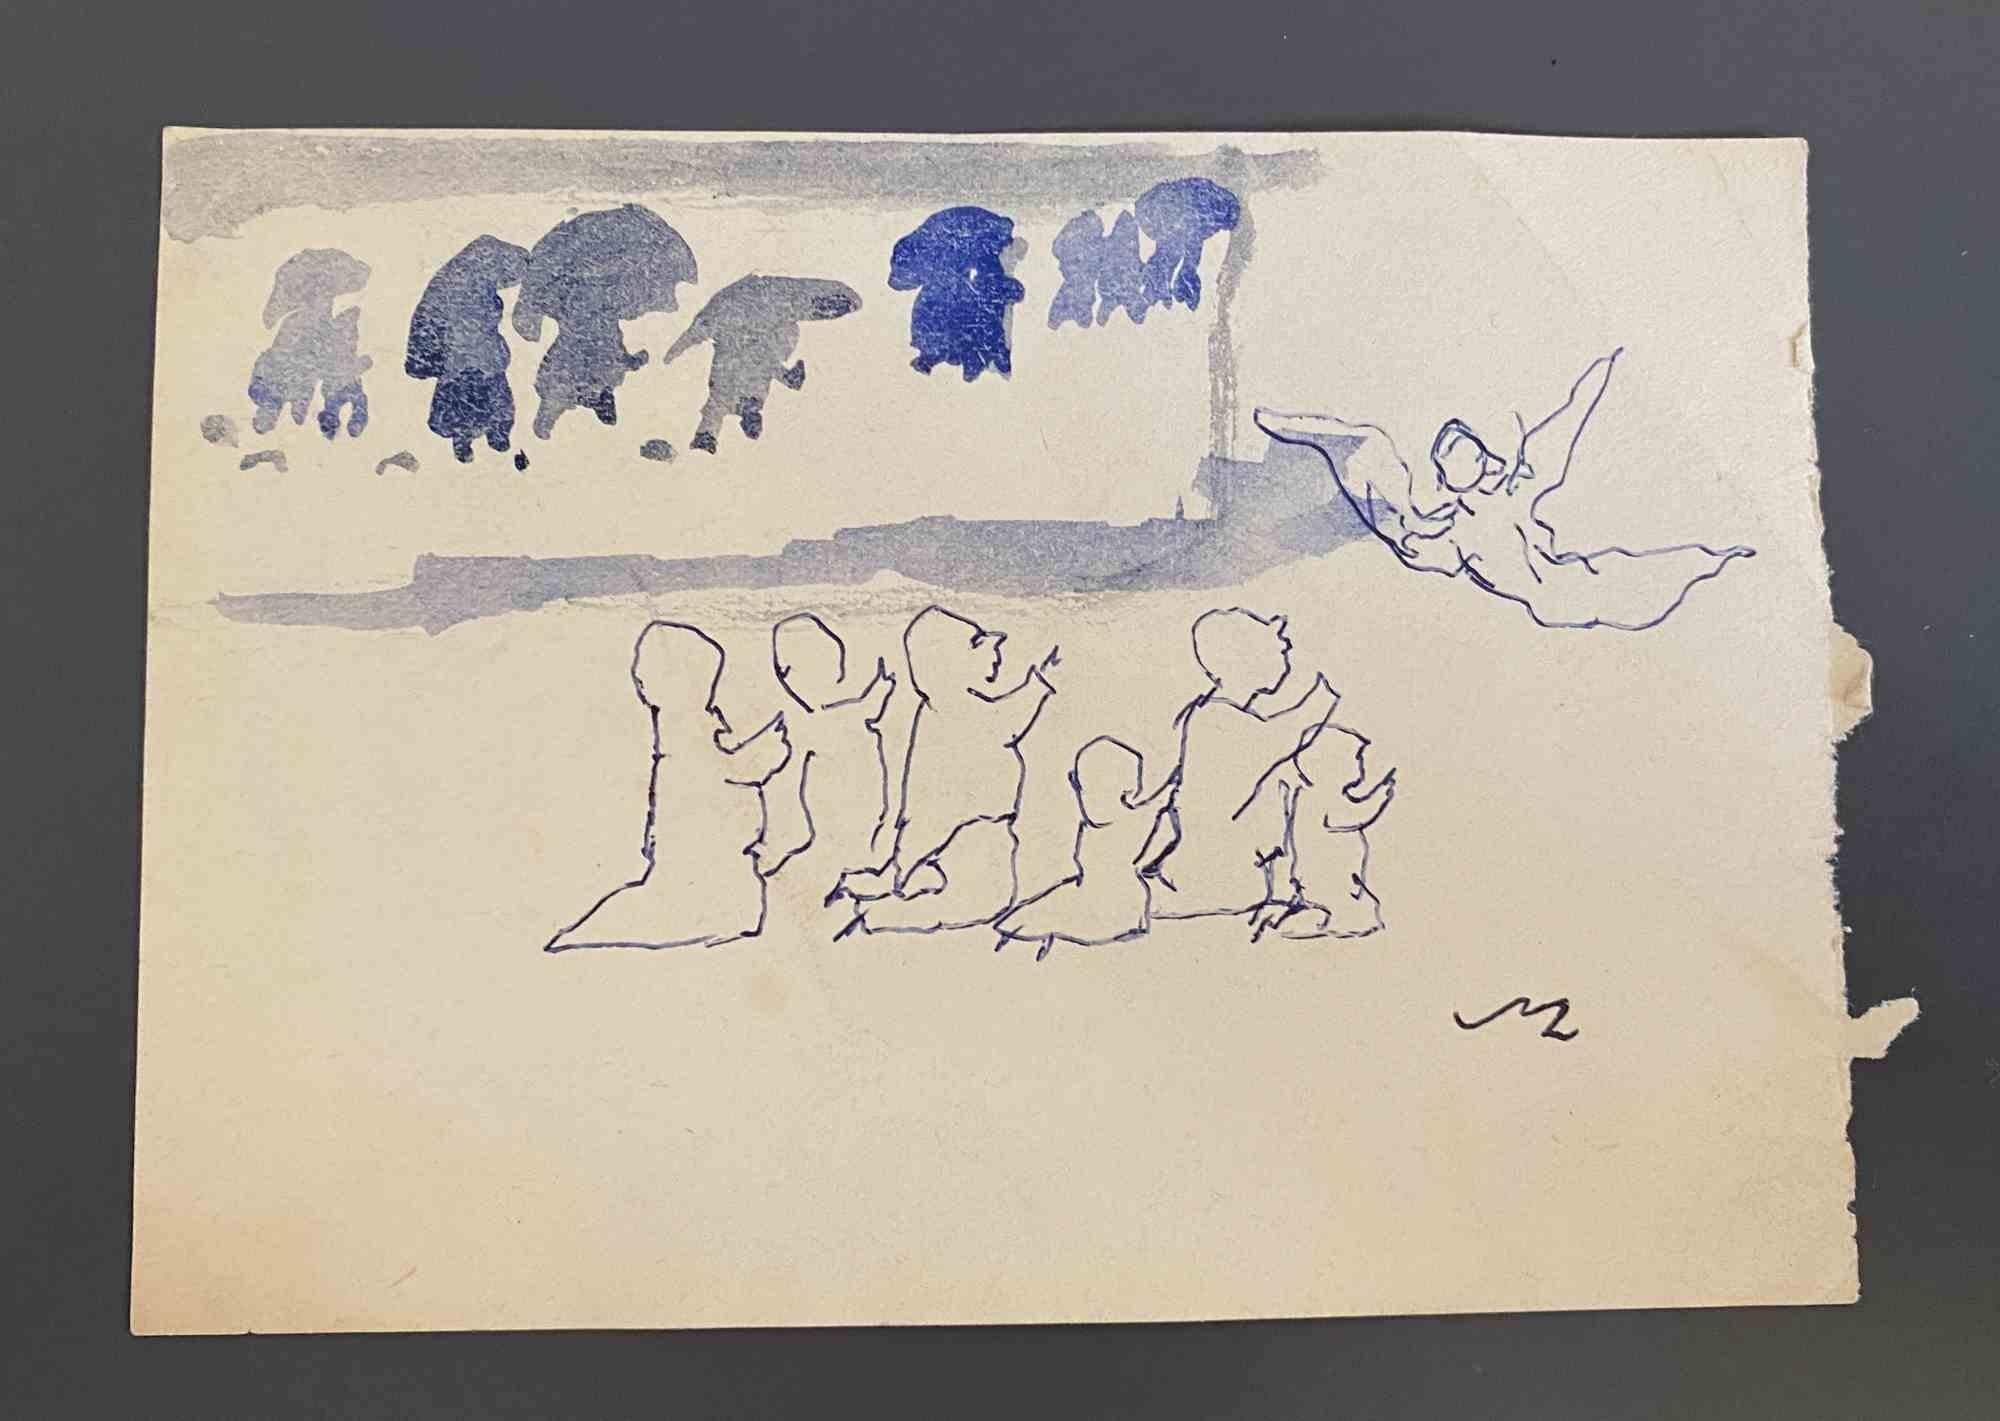 Komposition ist eine Feder und Aquarell Zeichnung von Mino Maccari realisiert  (1924-1989) in der Mitte des 20. Jahrhunderts.

Handsigniert auf der Unterseite.

Gute Bedingungen.

Mino Maccari (Siena, 1924-Rom, 16. Juni 1989) war ein italienischer